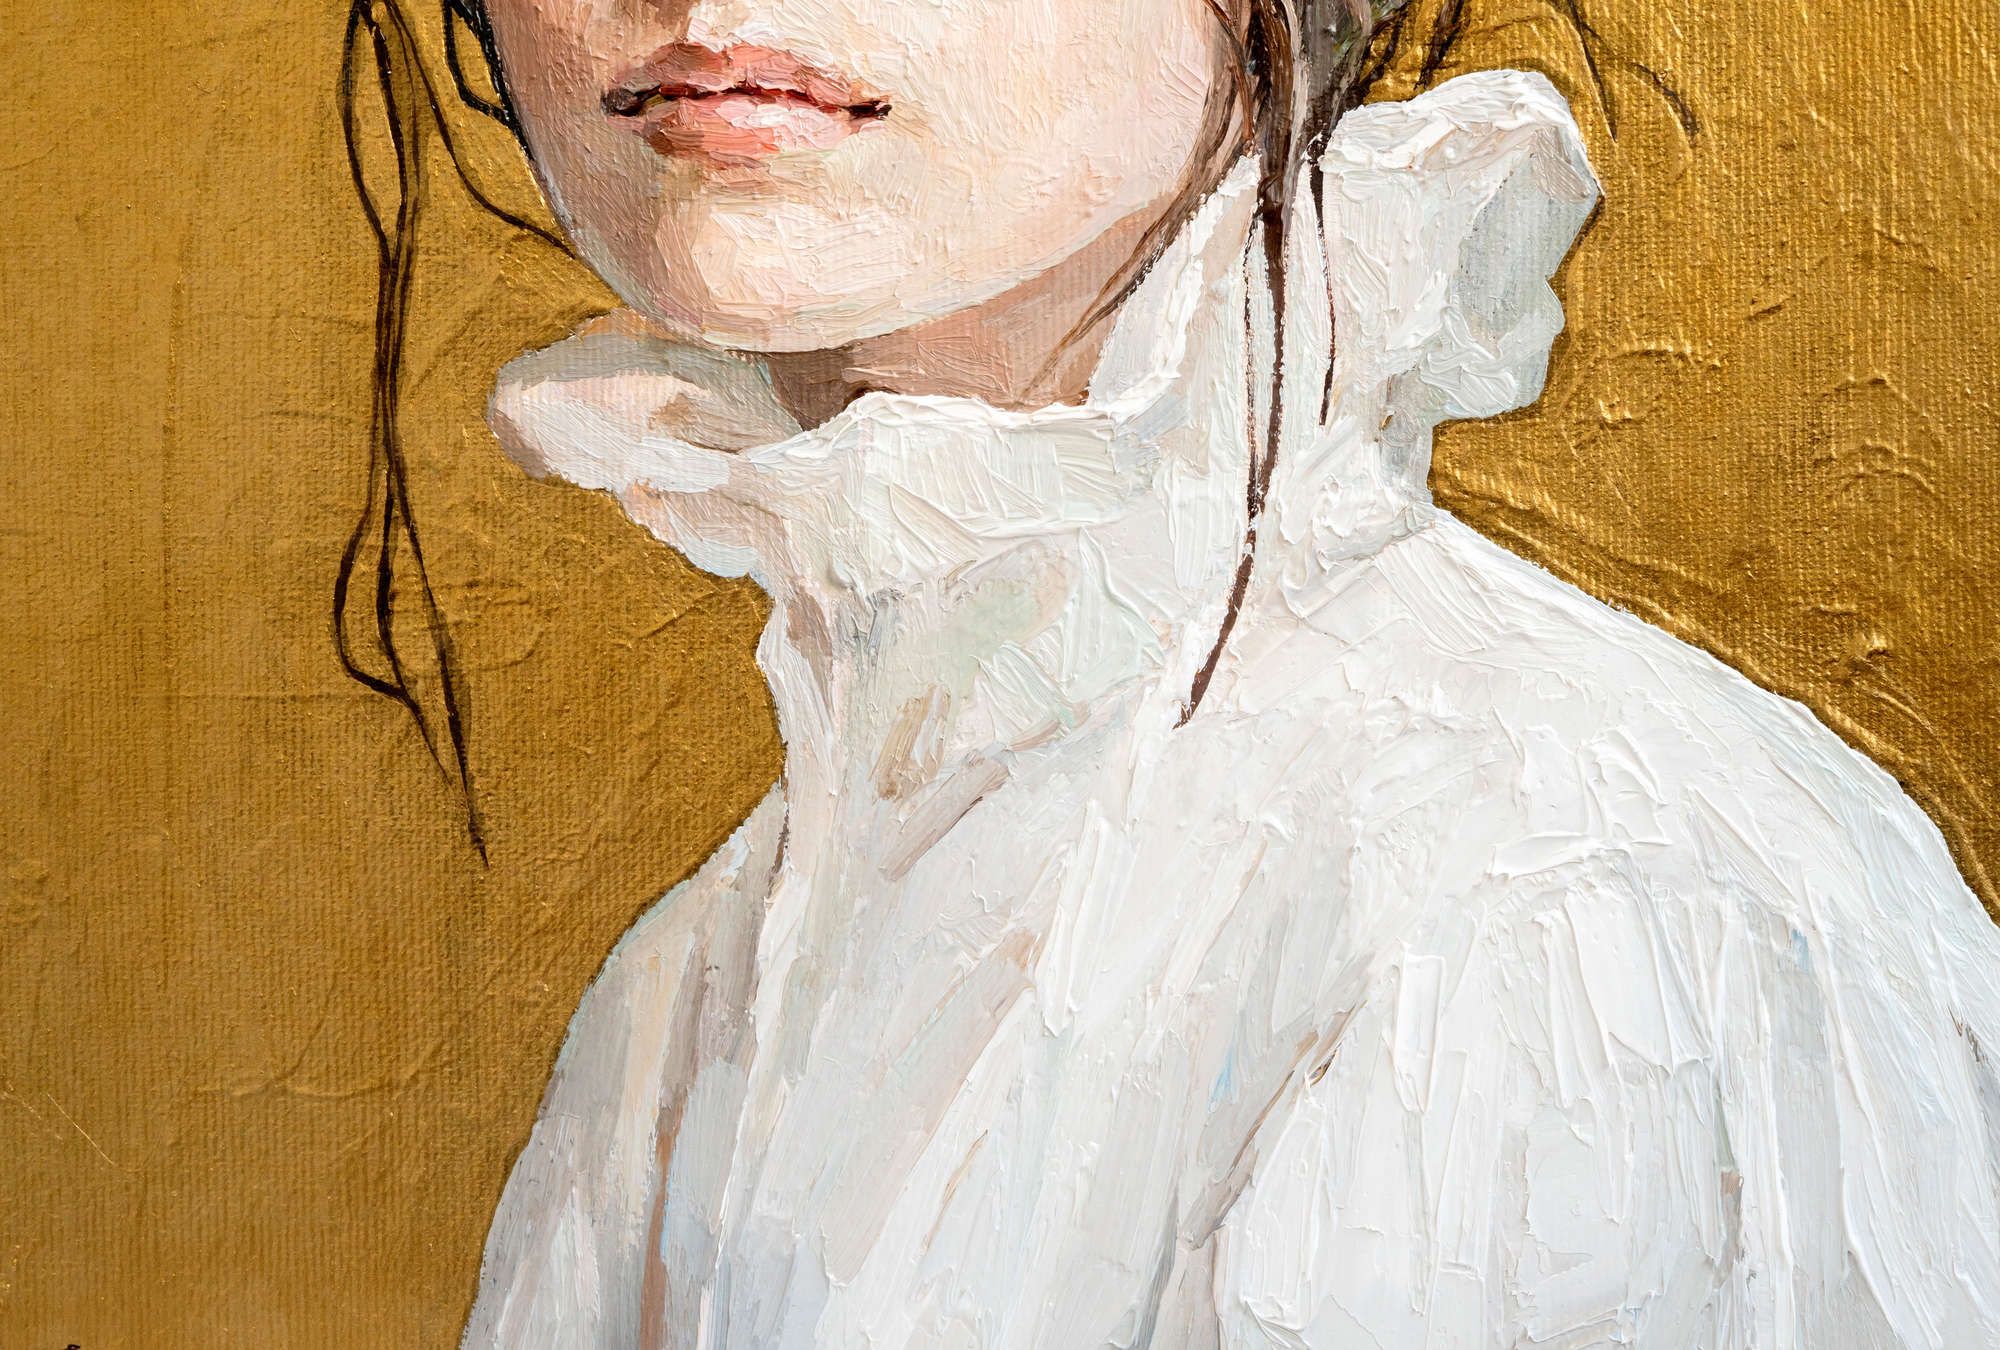             Digital behang »golda« - Gedeeltelijk vrouwenportret - kunstwerk met linnenstructuur | Glad, licht glanzend premium vliesmateriaal
        